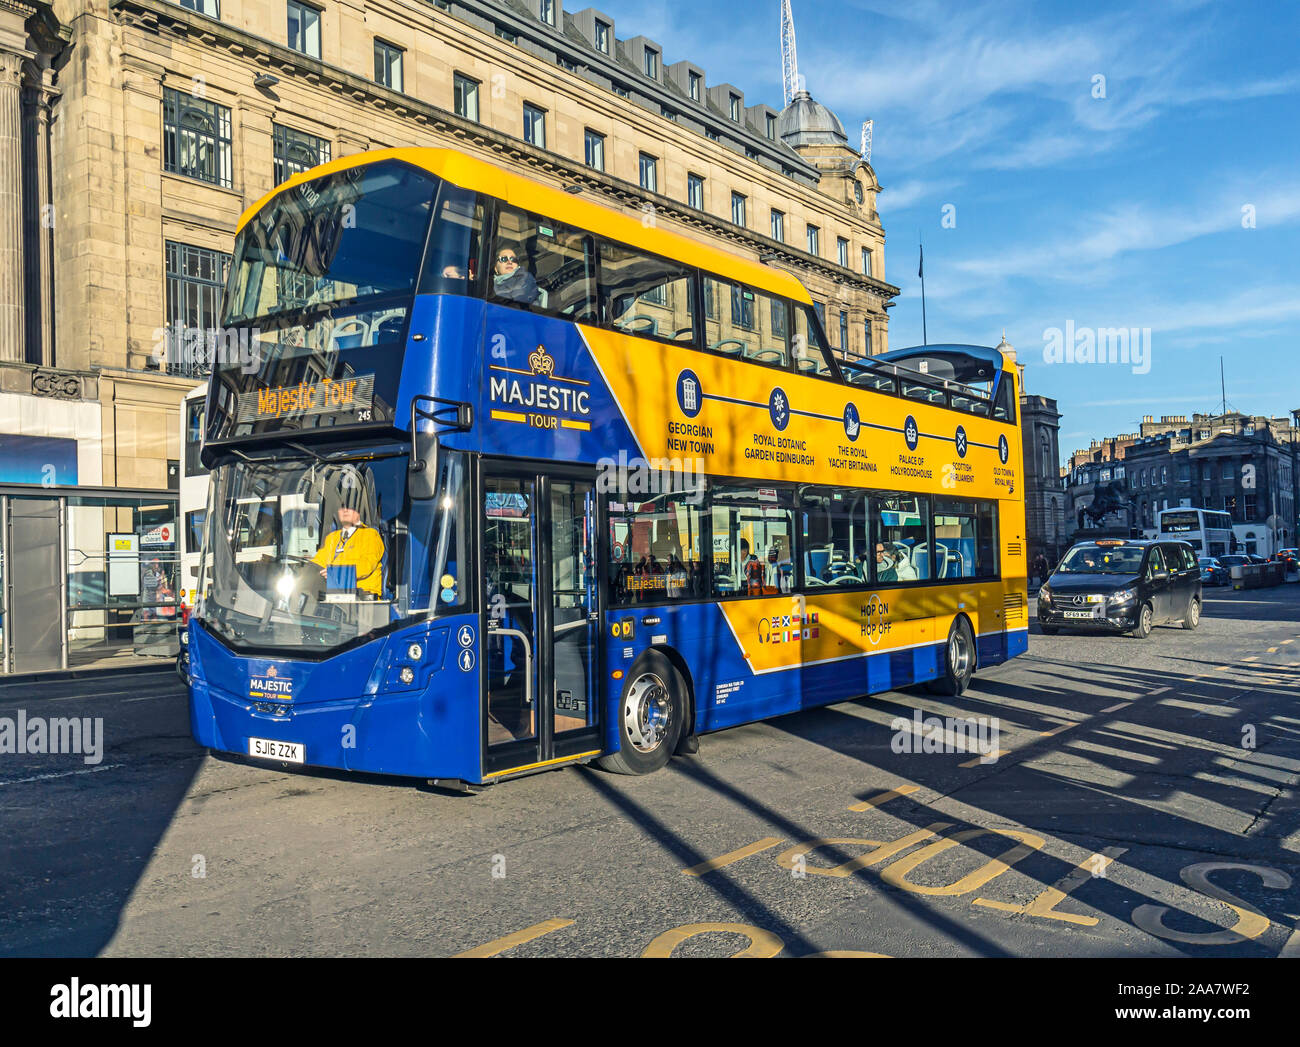 Edinburgh Sightseeing Bus Majestic Tour in der Princes Street Edinburgh Schottland Großbritannien Stockfoto